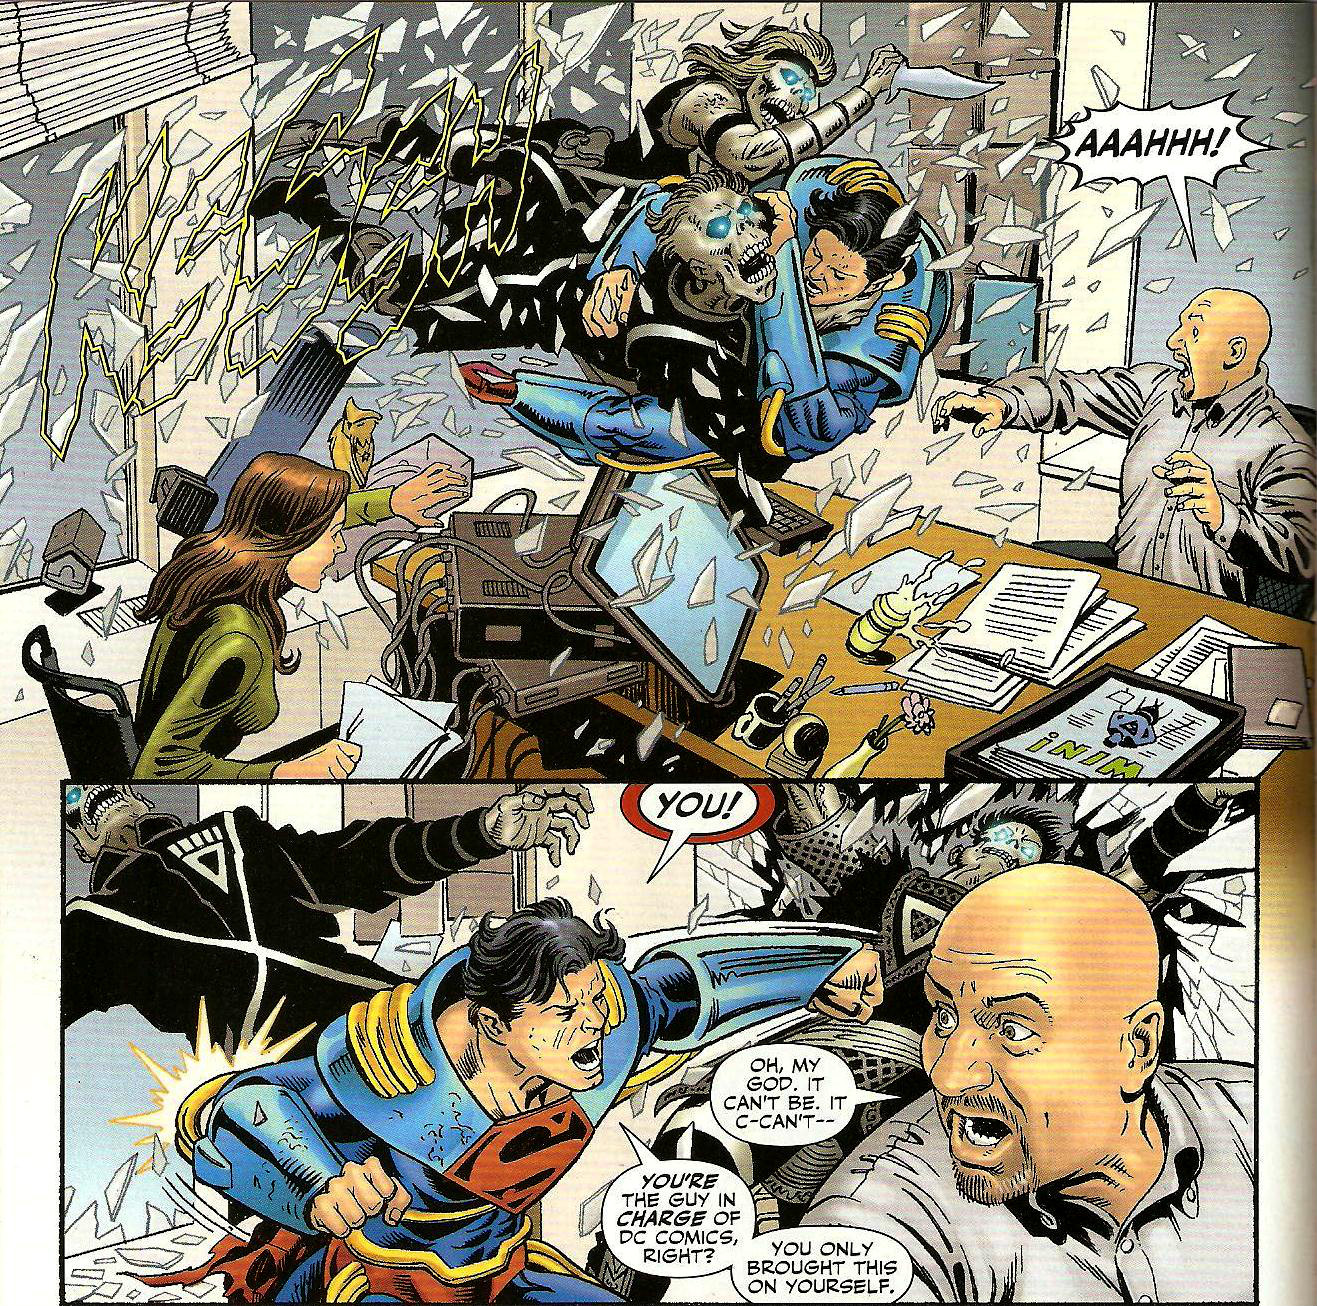 From Adventure Comics (Vol. 3) #5 (2010)